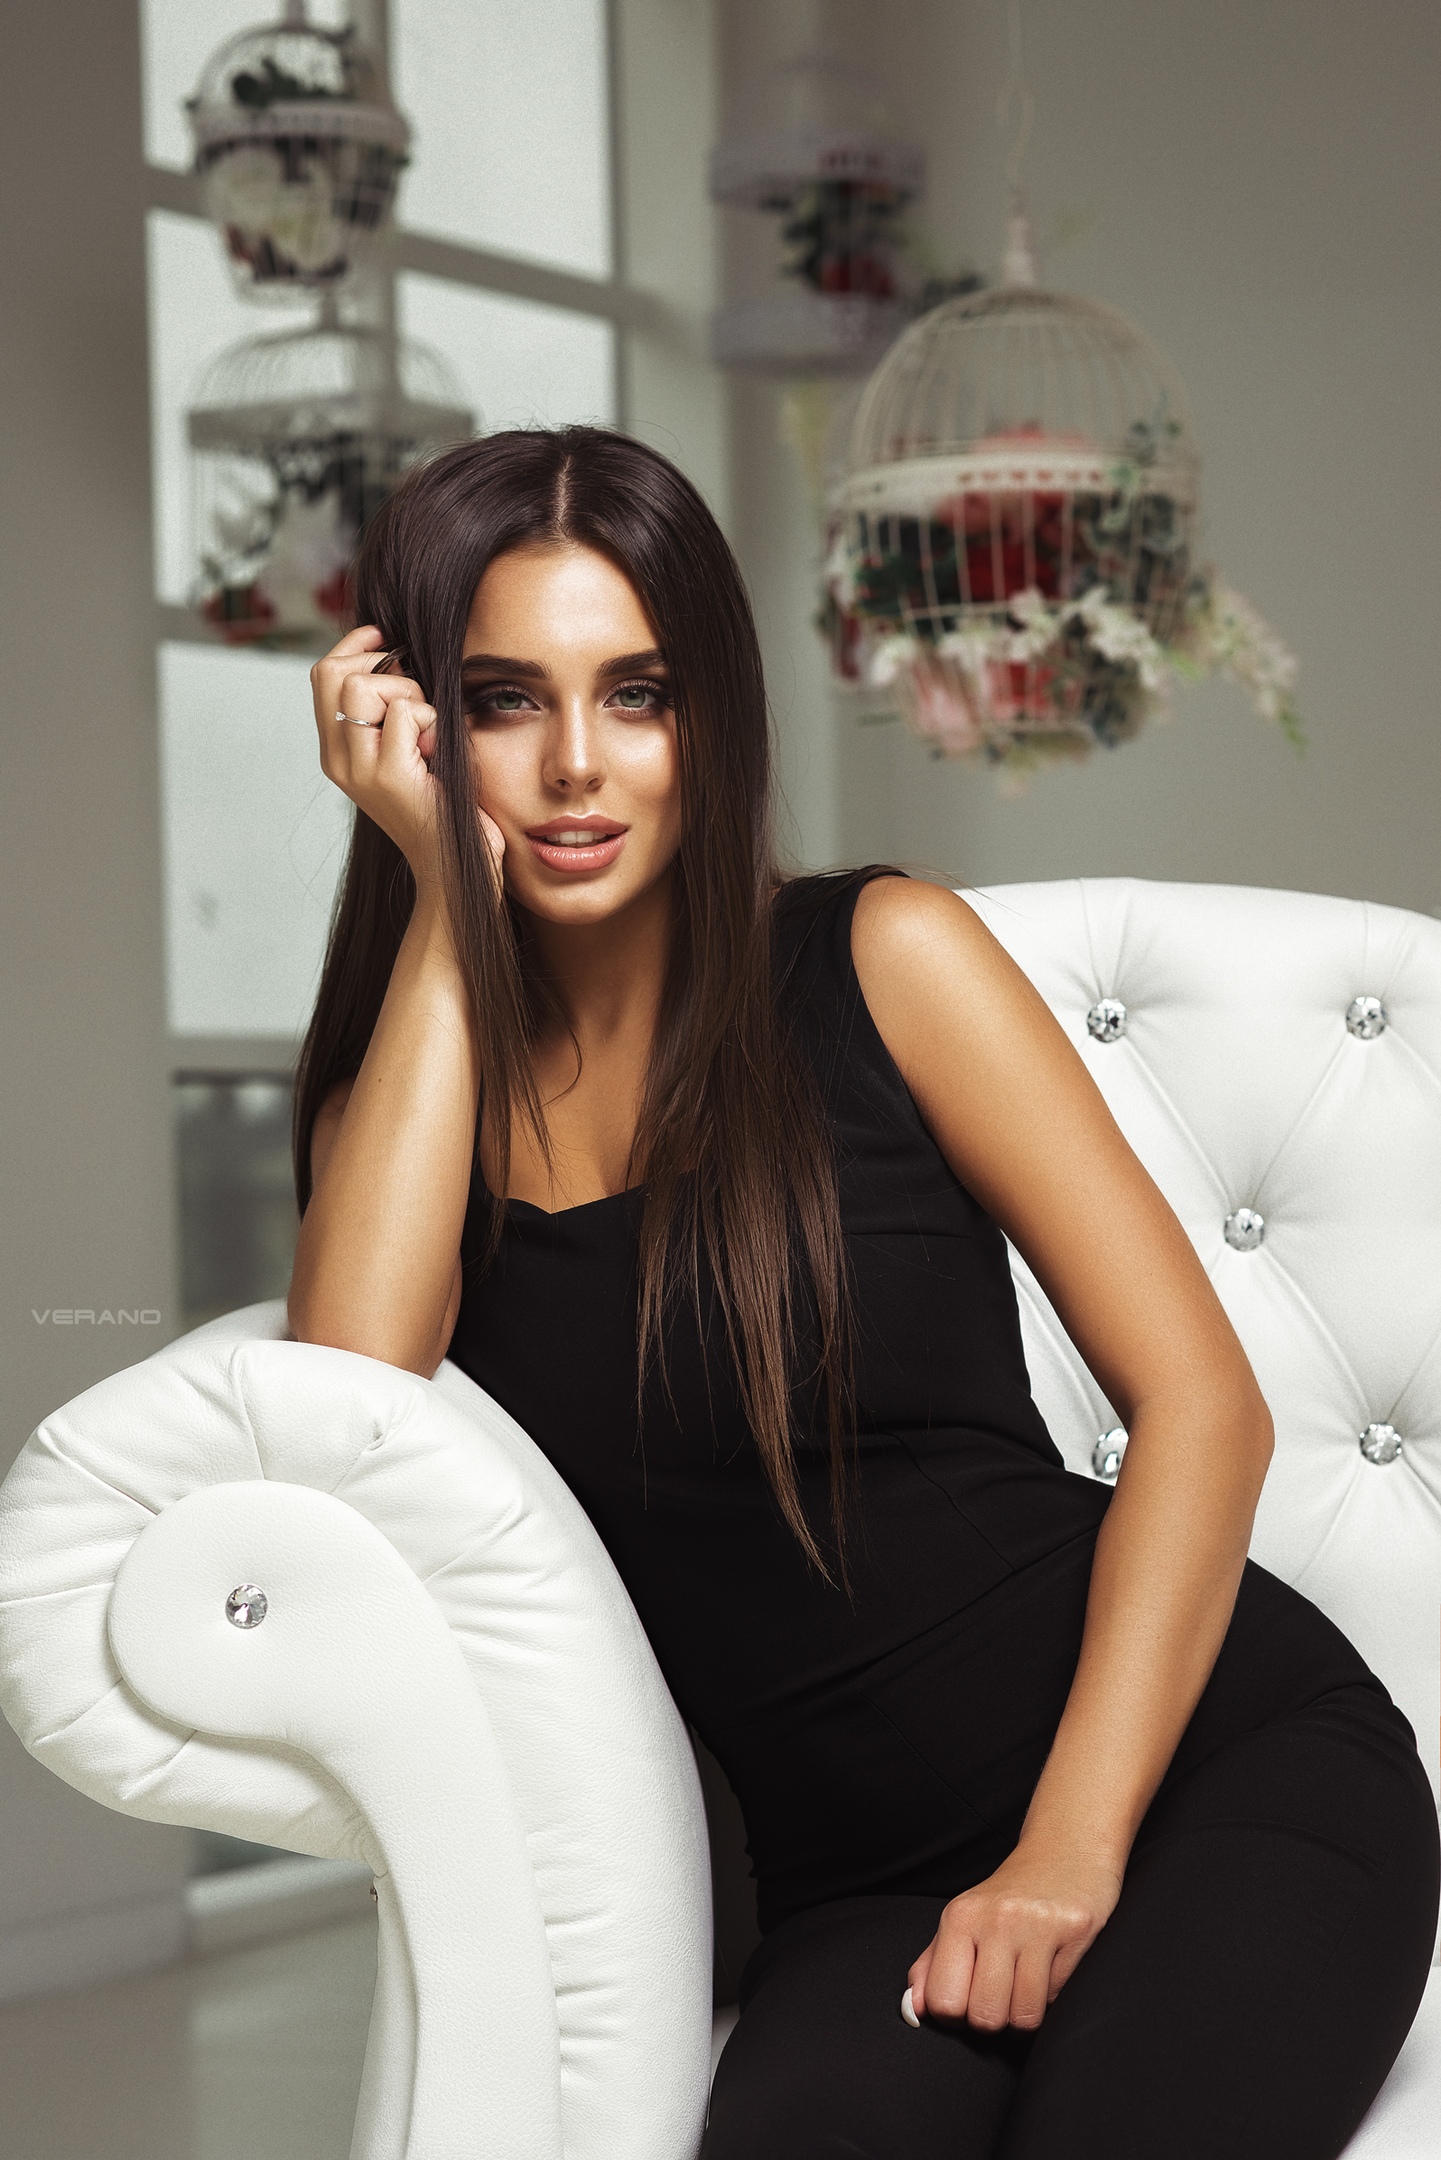 Nikolas Verano Portrait Women Brunette Black Clothing Couch Black Dress Anastasiya Leonova 1441x2160